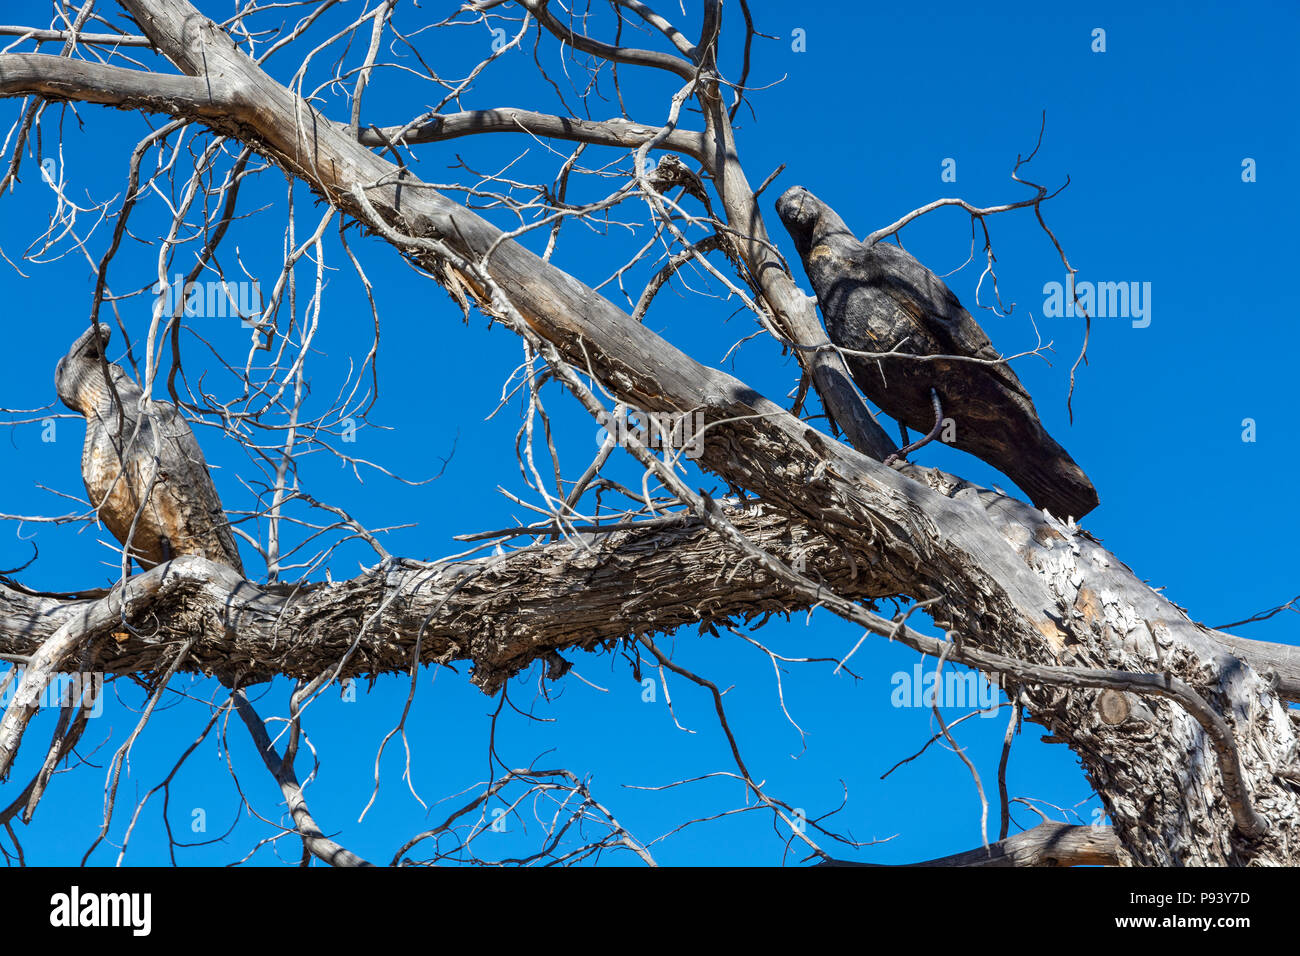 New Mexico, Santa Fe County, Lamy, wood bird carvings in dead tree Stock Photo